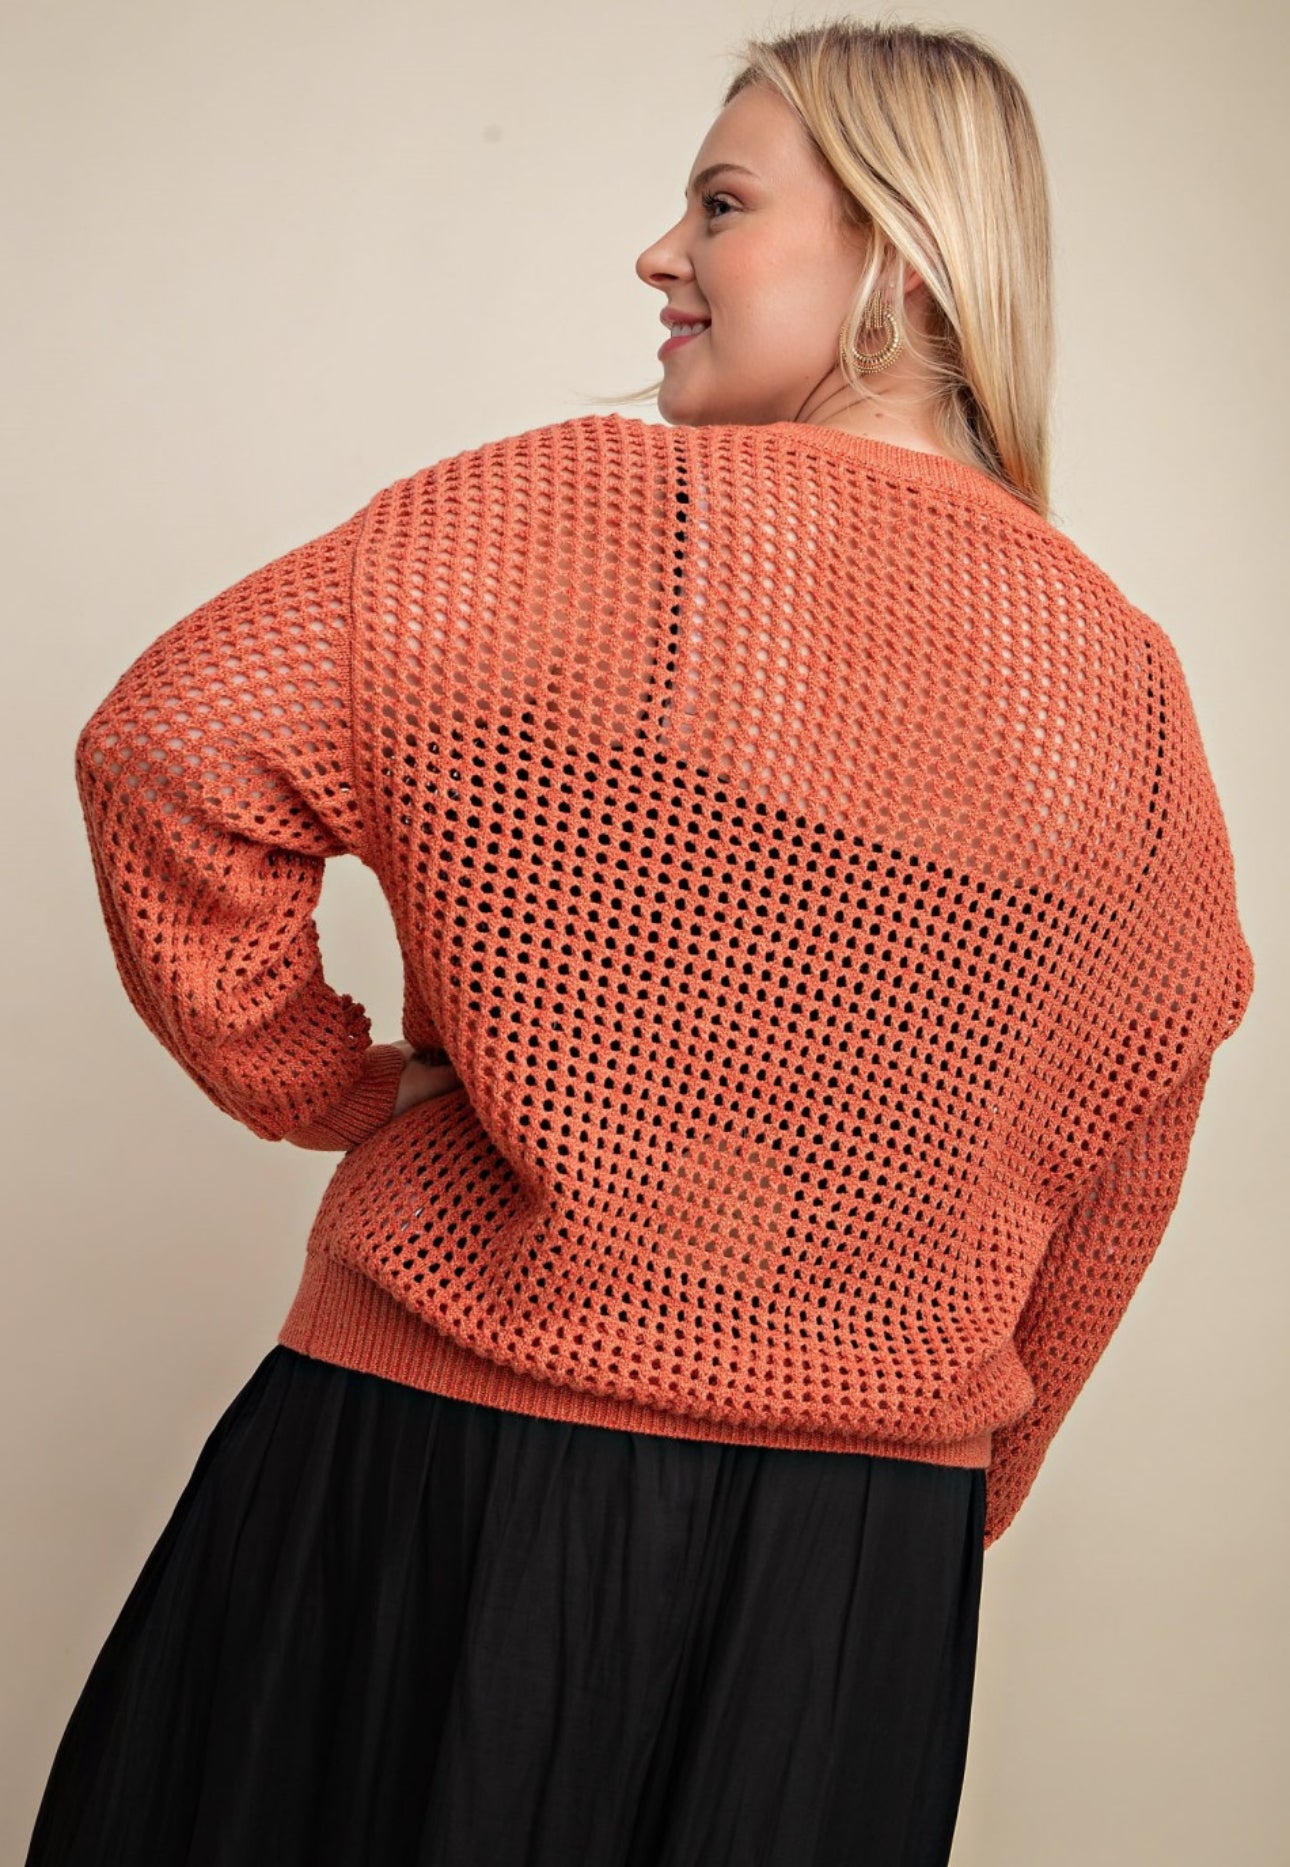 Fish Net Style Sweater